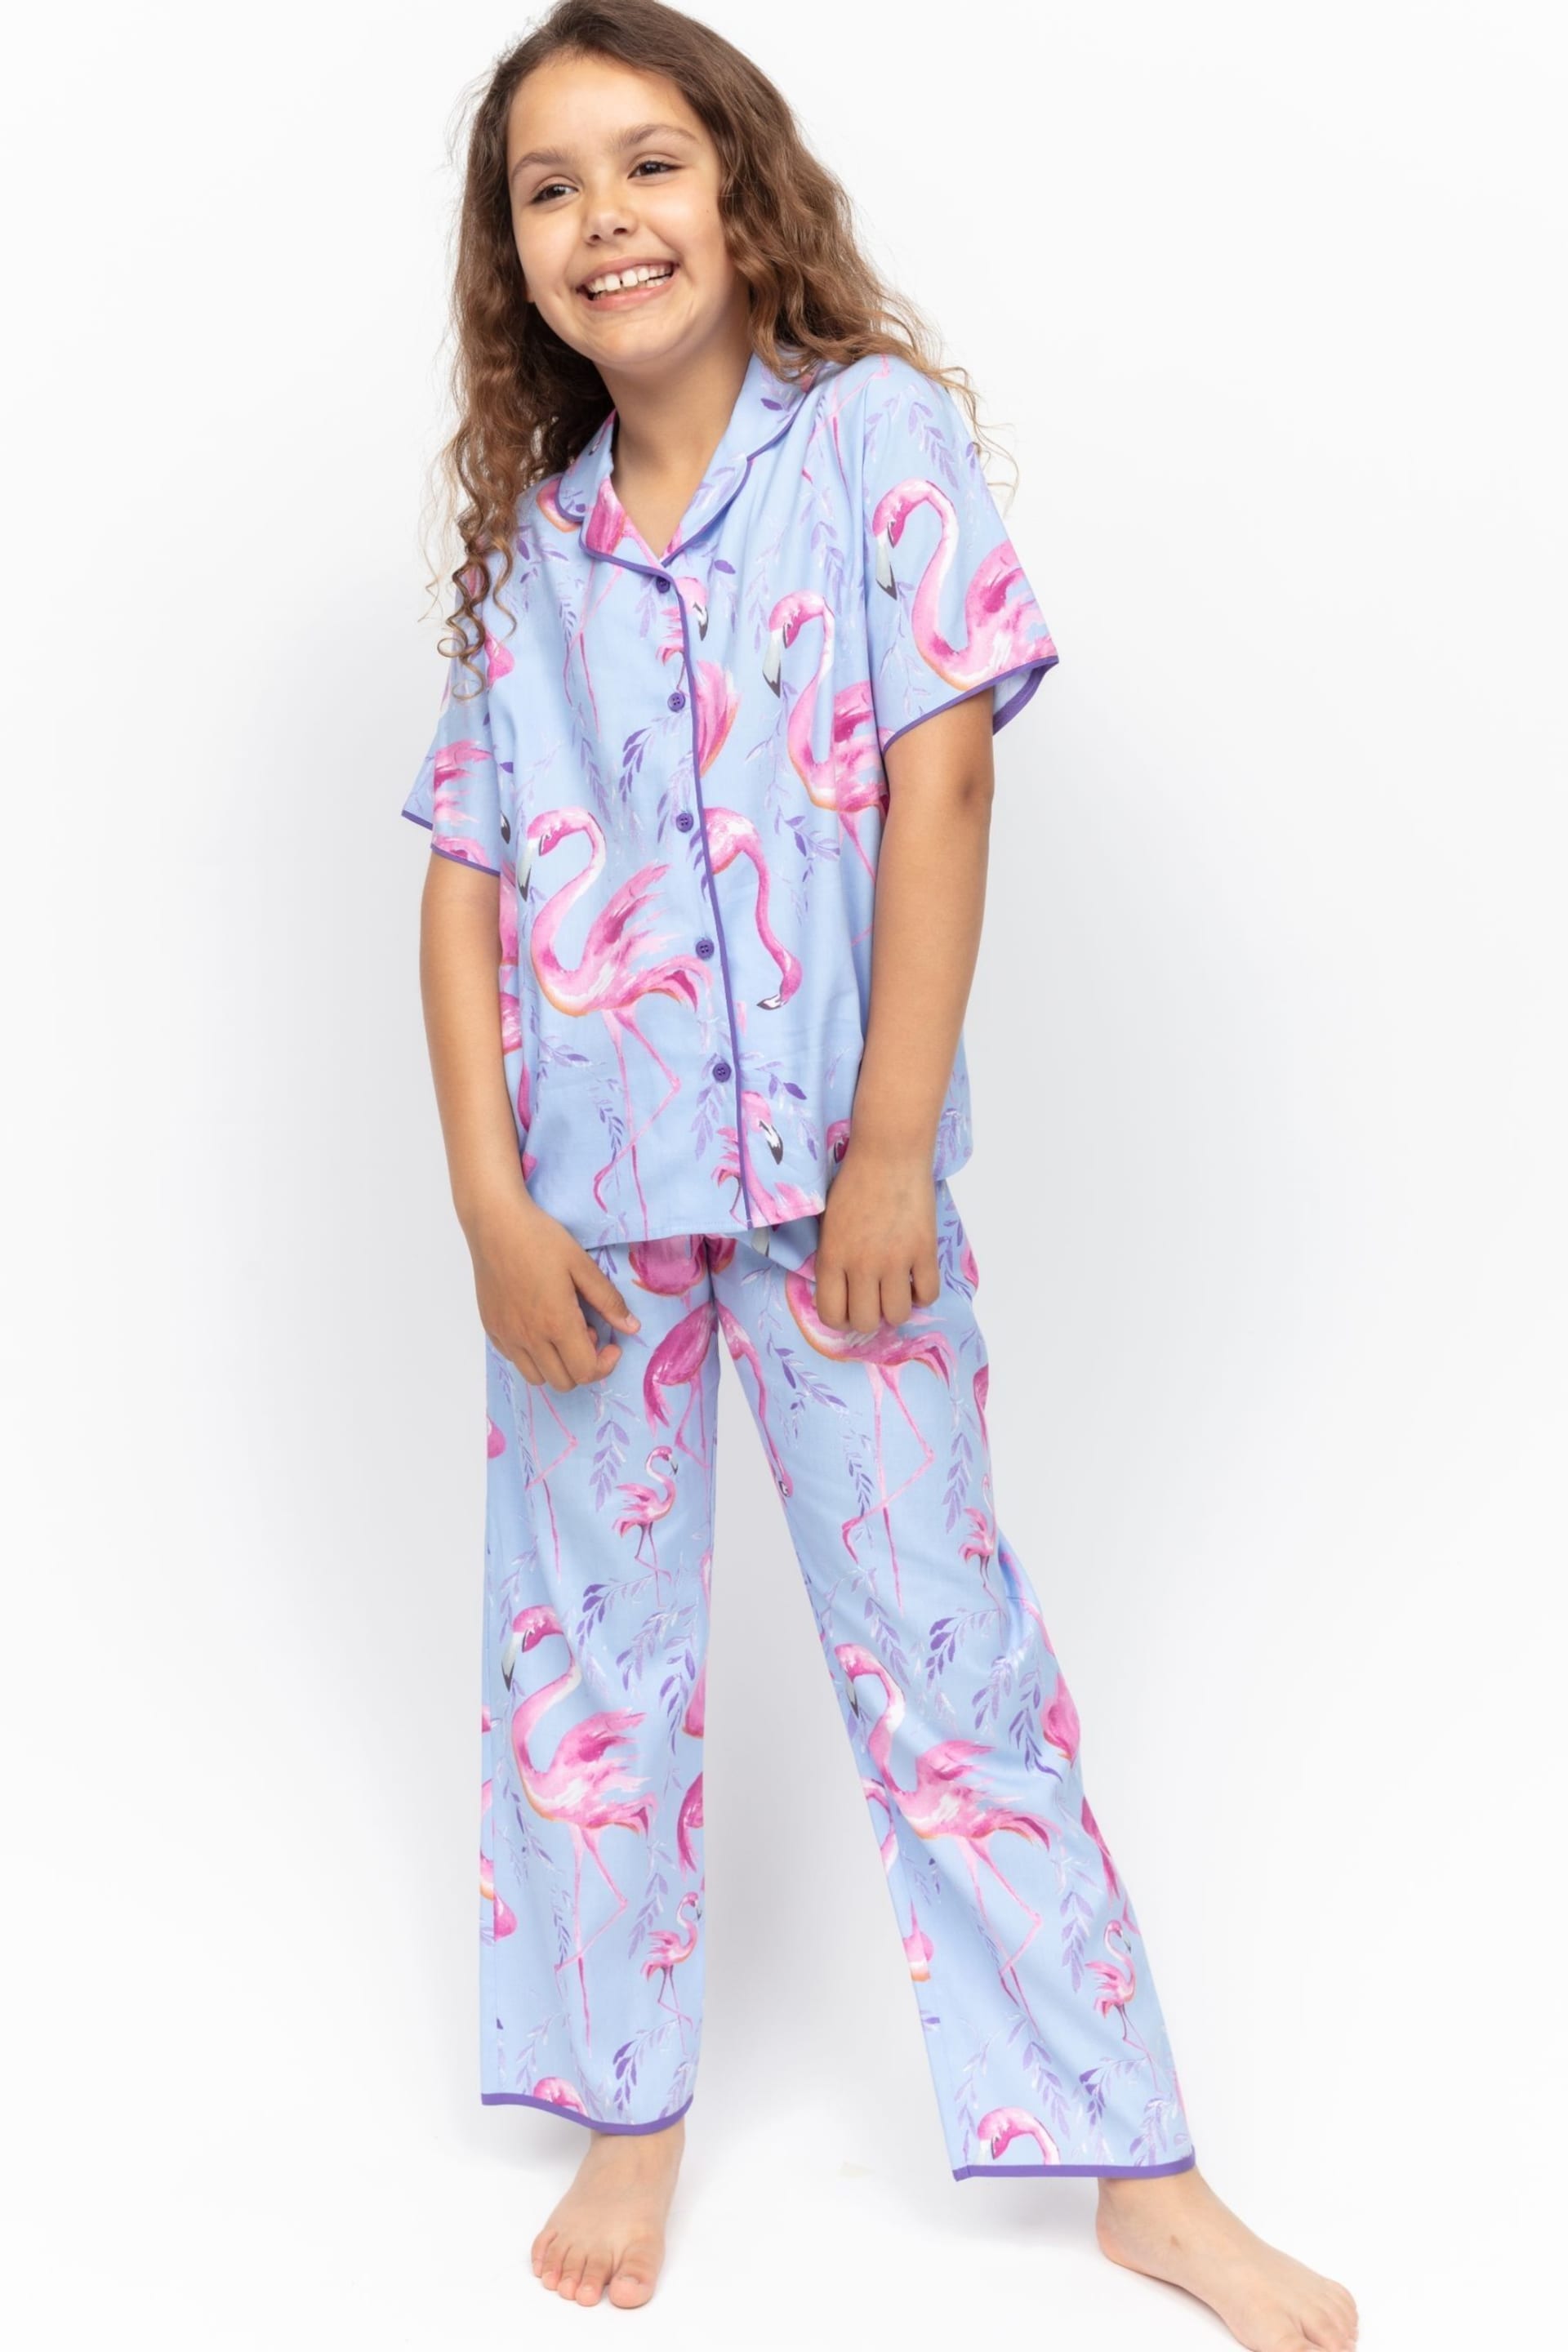 Minijammies Blue Flamingo Print Short Sleeve Pyjamas Set - Image 1 of 4